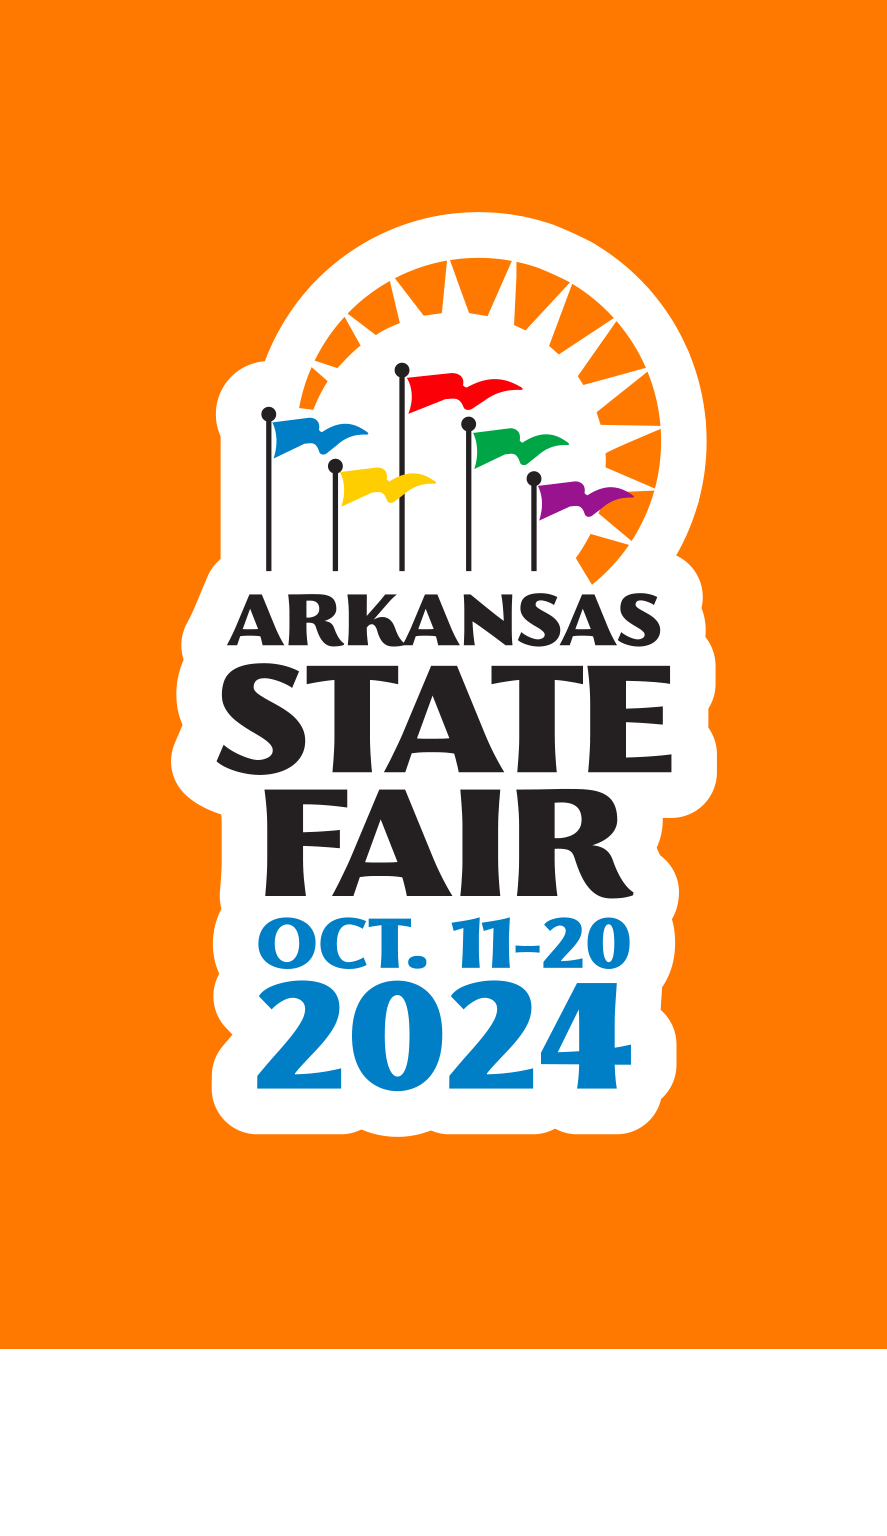 Arkansas State Fair Arkansas State Fair Home